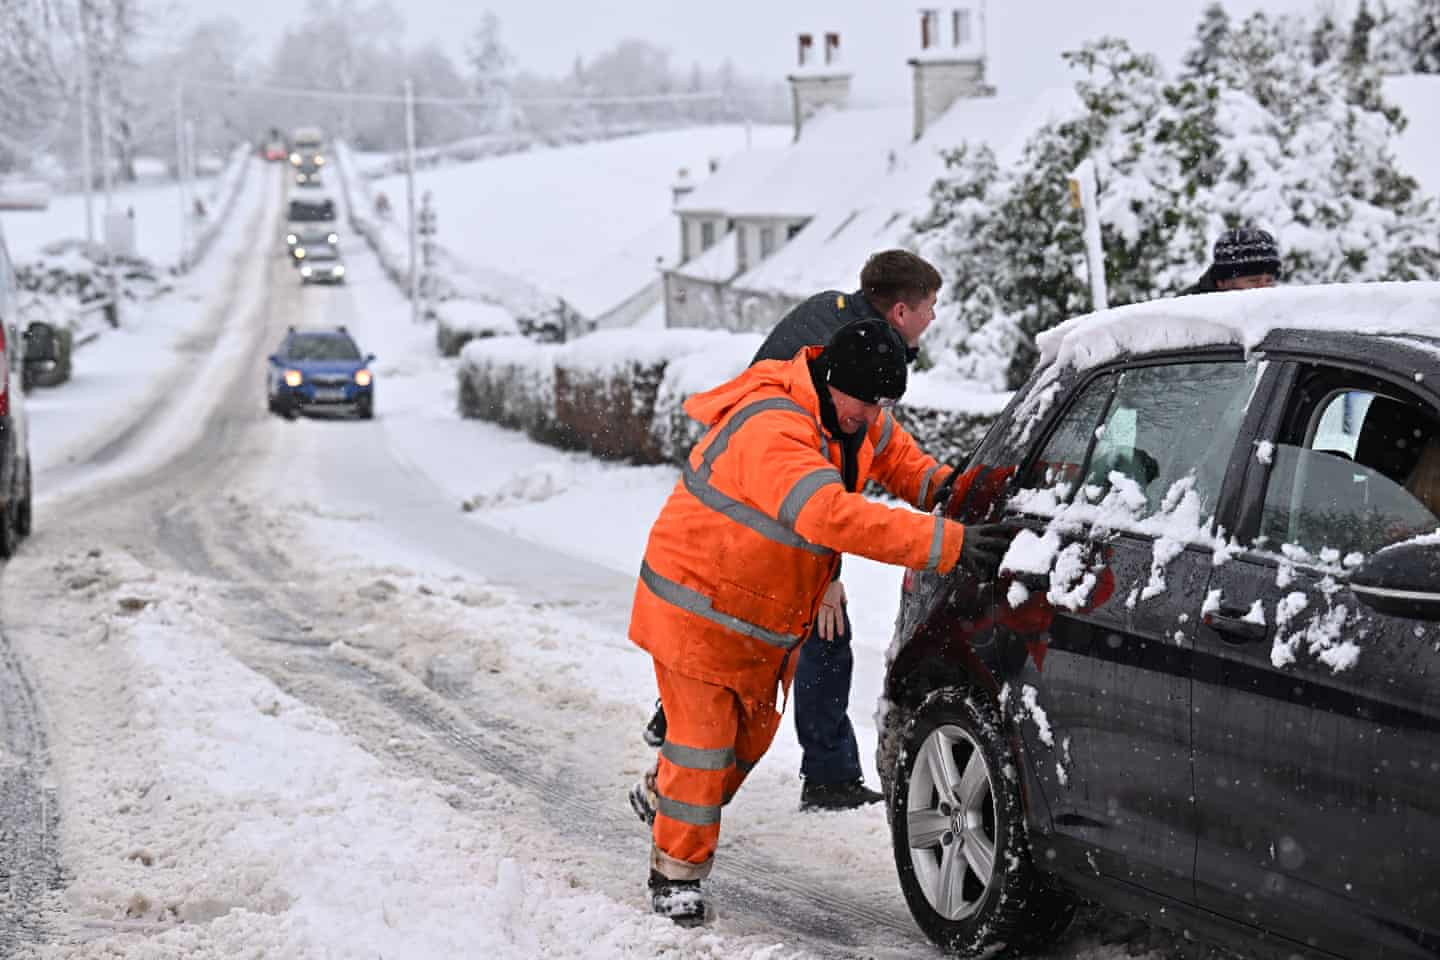 Người lái xe gặp nhiều khó khăn trong điều kiện tuyết rơi dày đặc. Ảnh: Jeff J Mitchell / Getty Images.